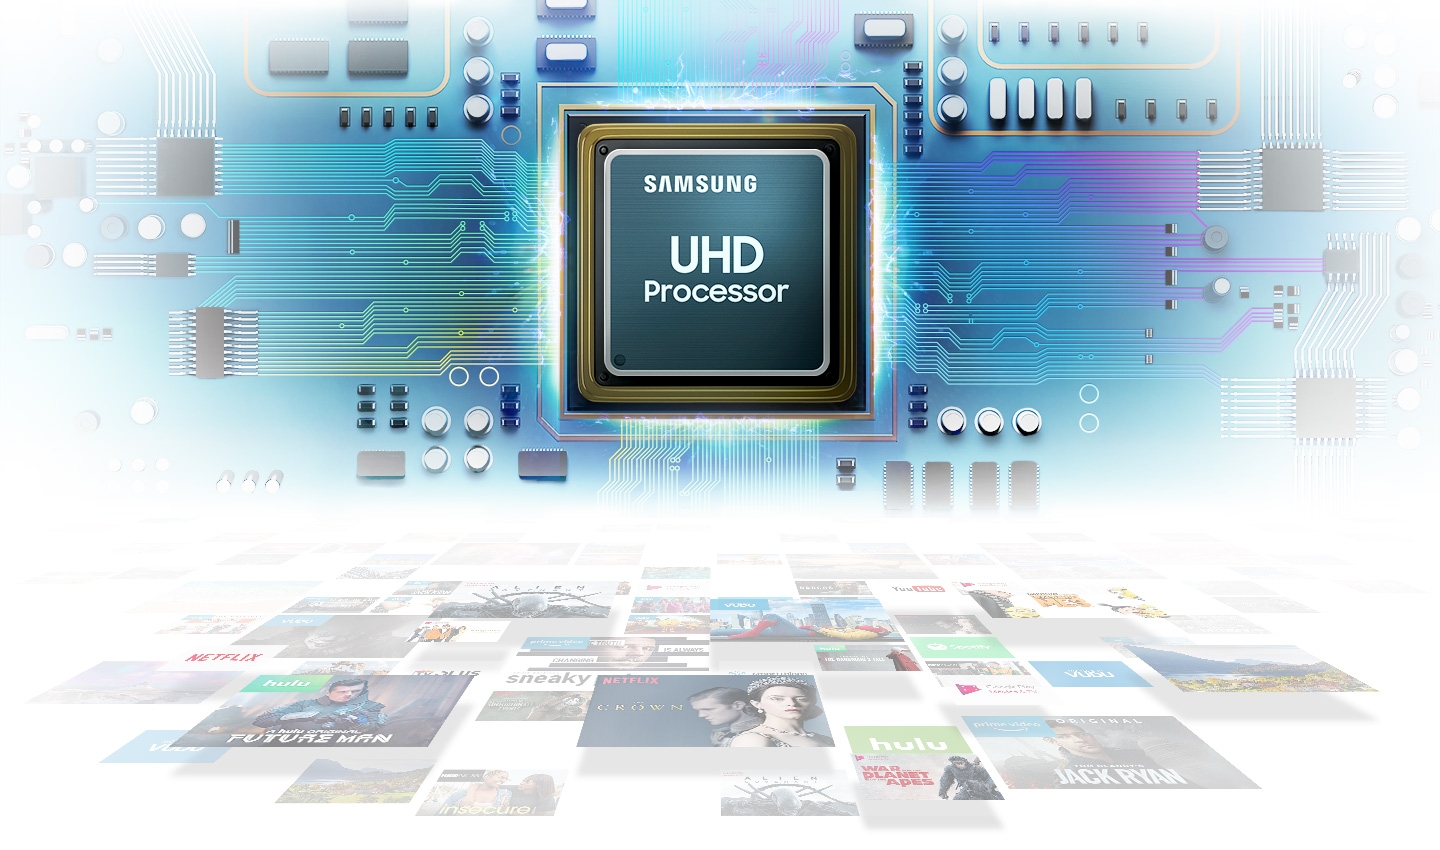 Procesor UHD – niesamowita jakość obrazu